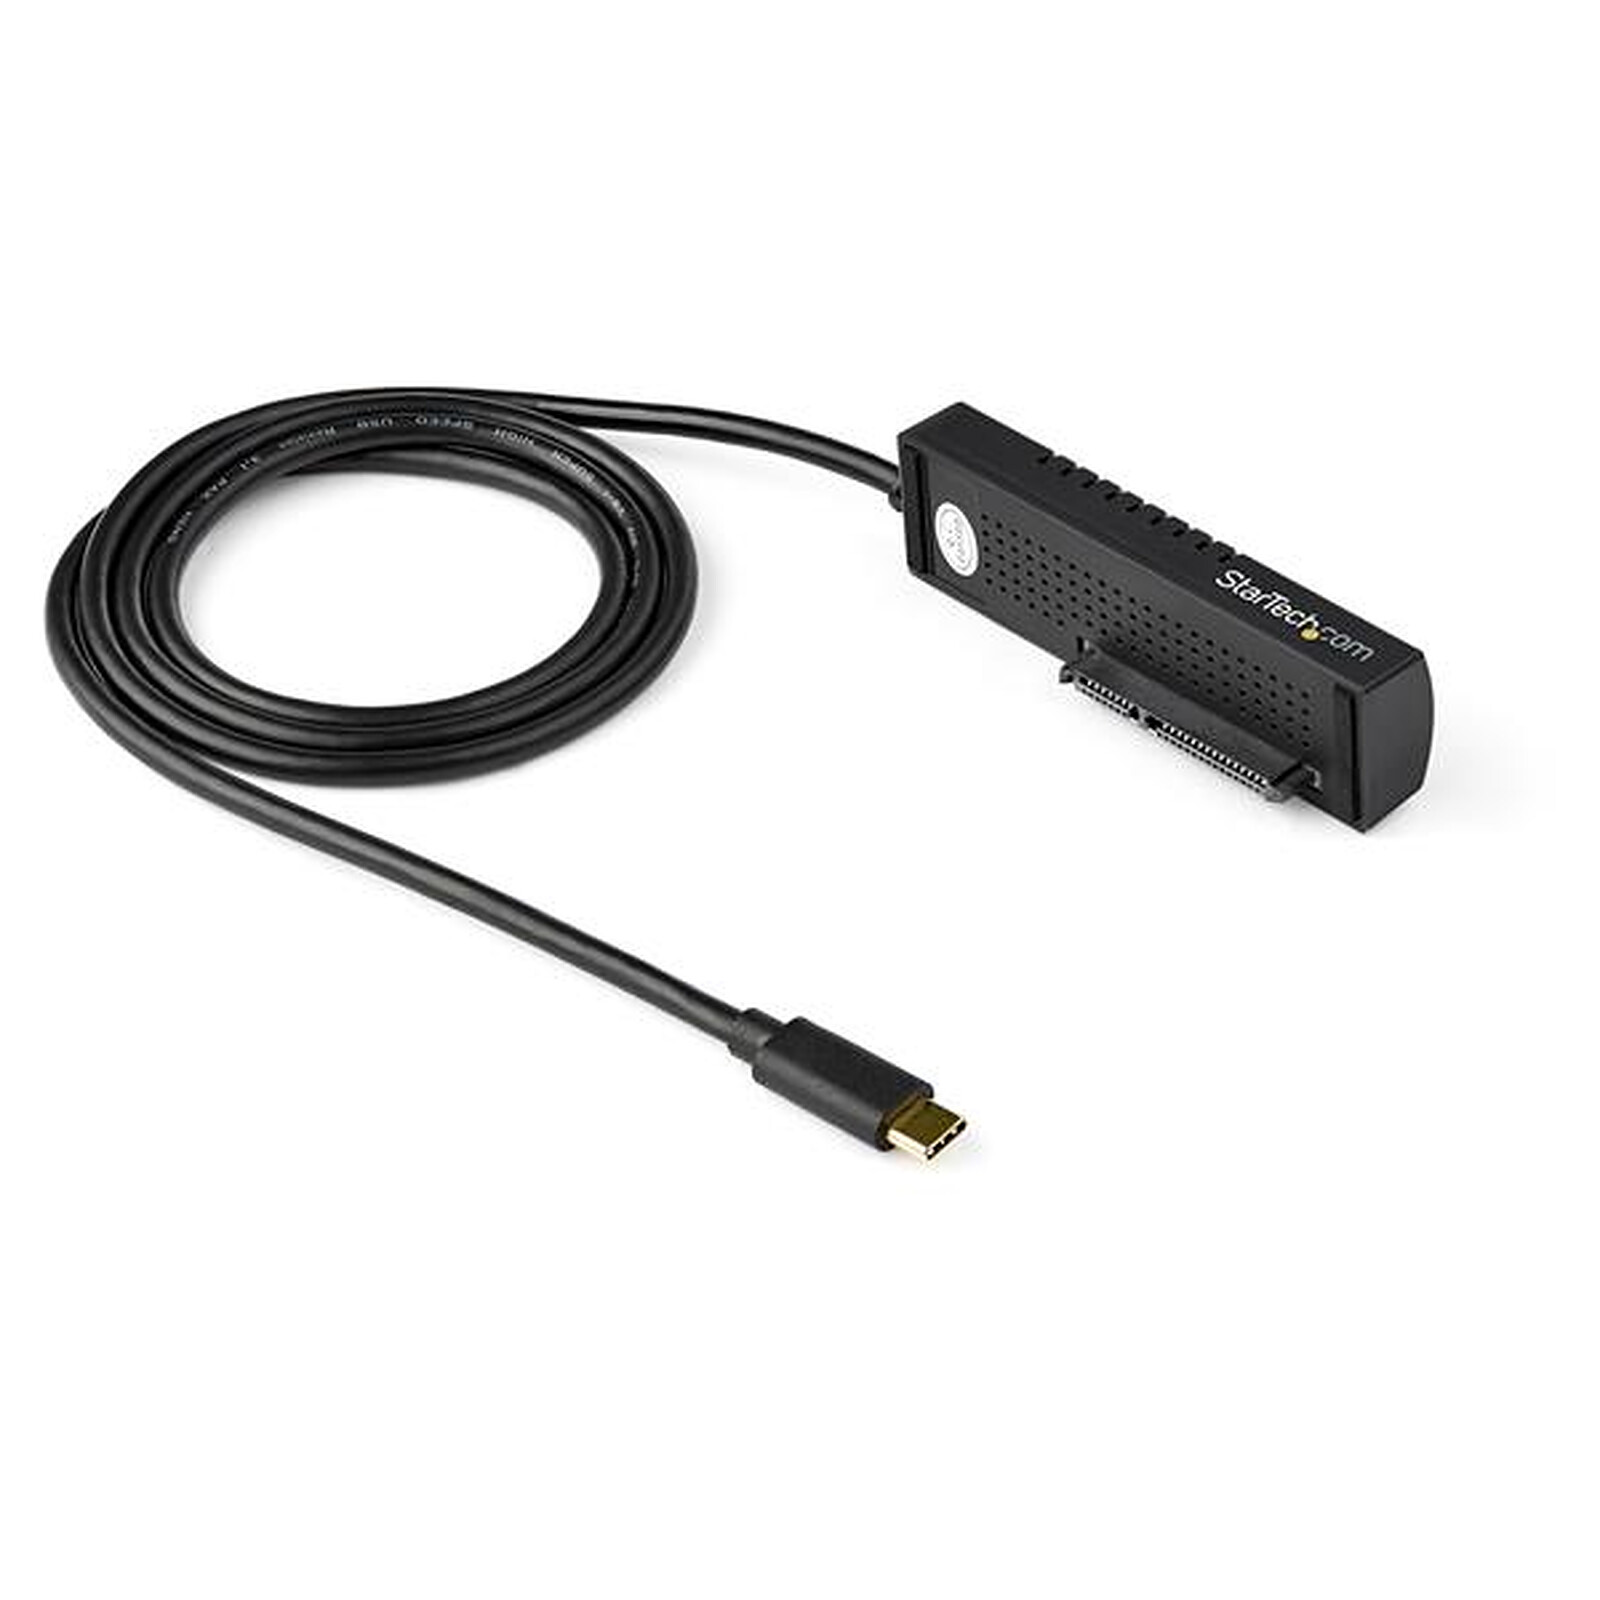 TOOGOO Cable Adaptateur Disque Dur Ssd 10Gbps Type C USB 3.1 à Sata III HDD pour Drive 2,5 Pouces Sata Soutien Usap 20Cm Longueur 